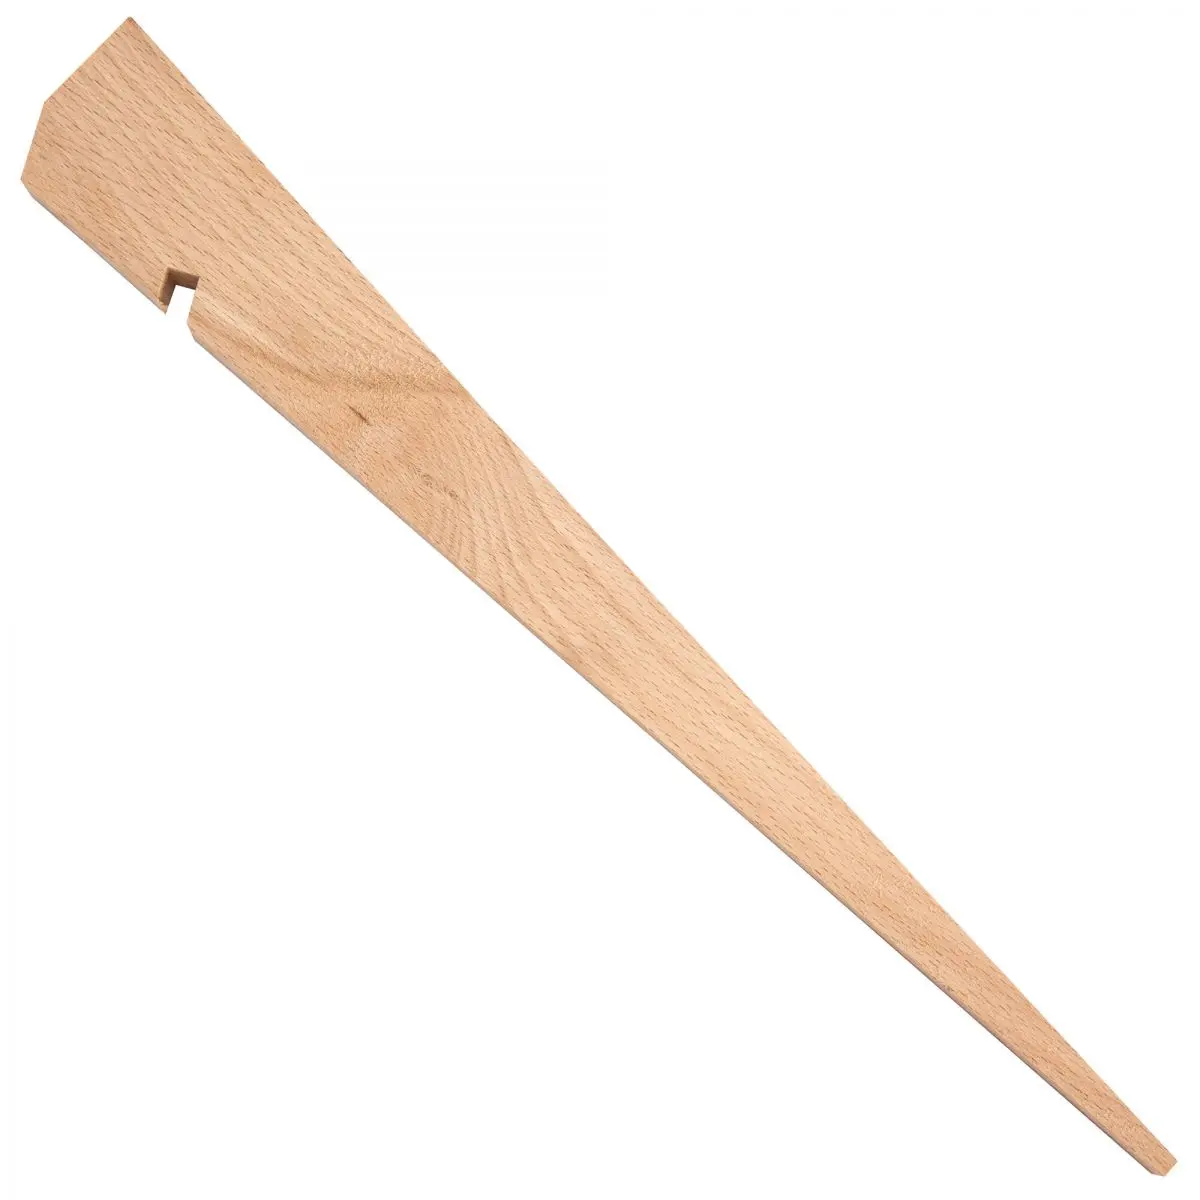 Cuie din lemn - 30 cm, ambalaj autoservire 4 buc